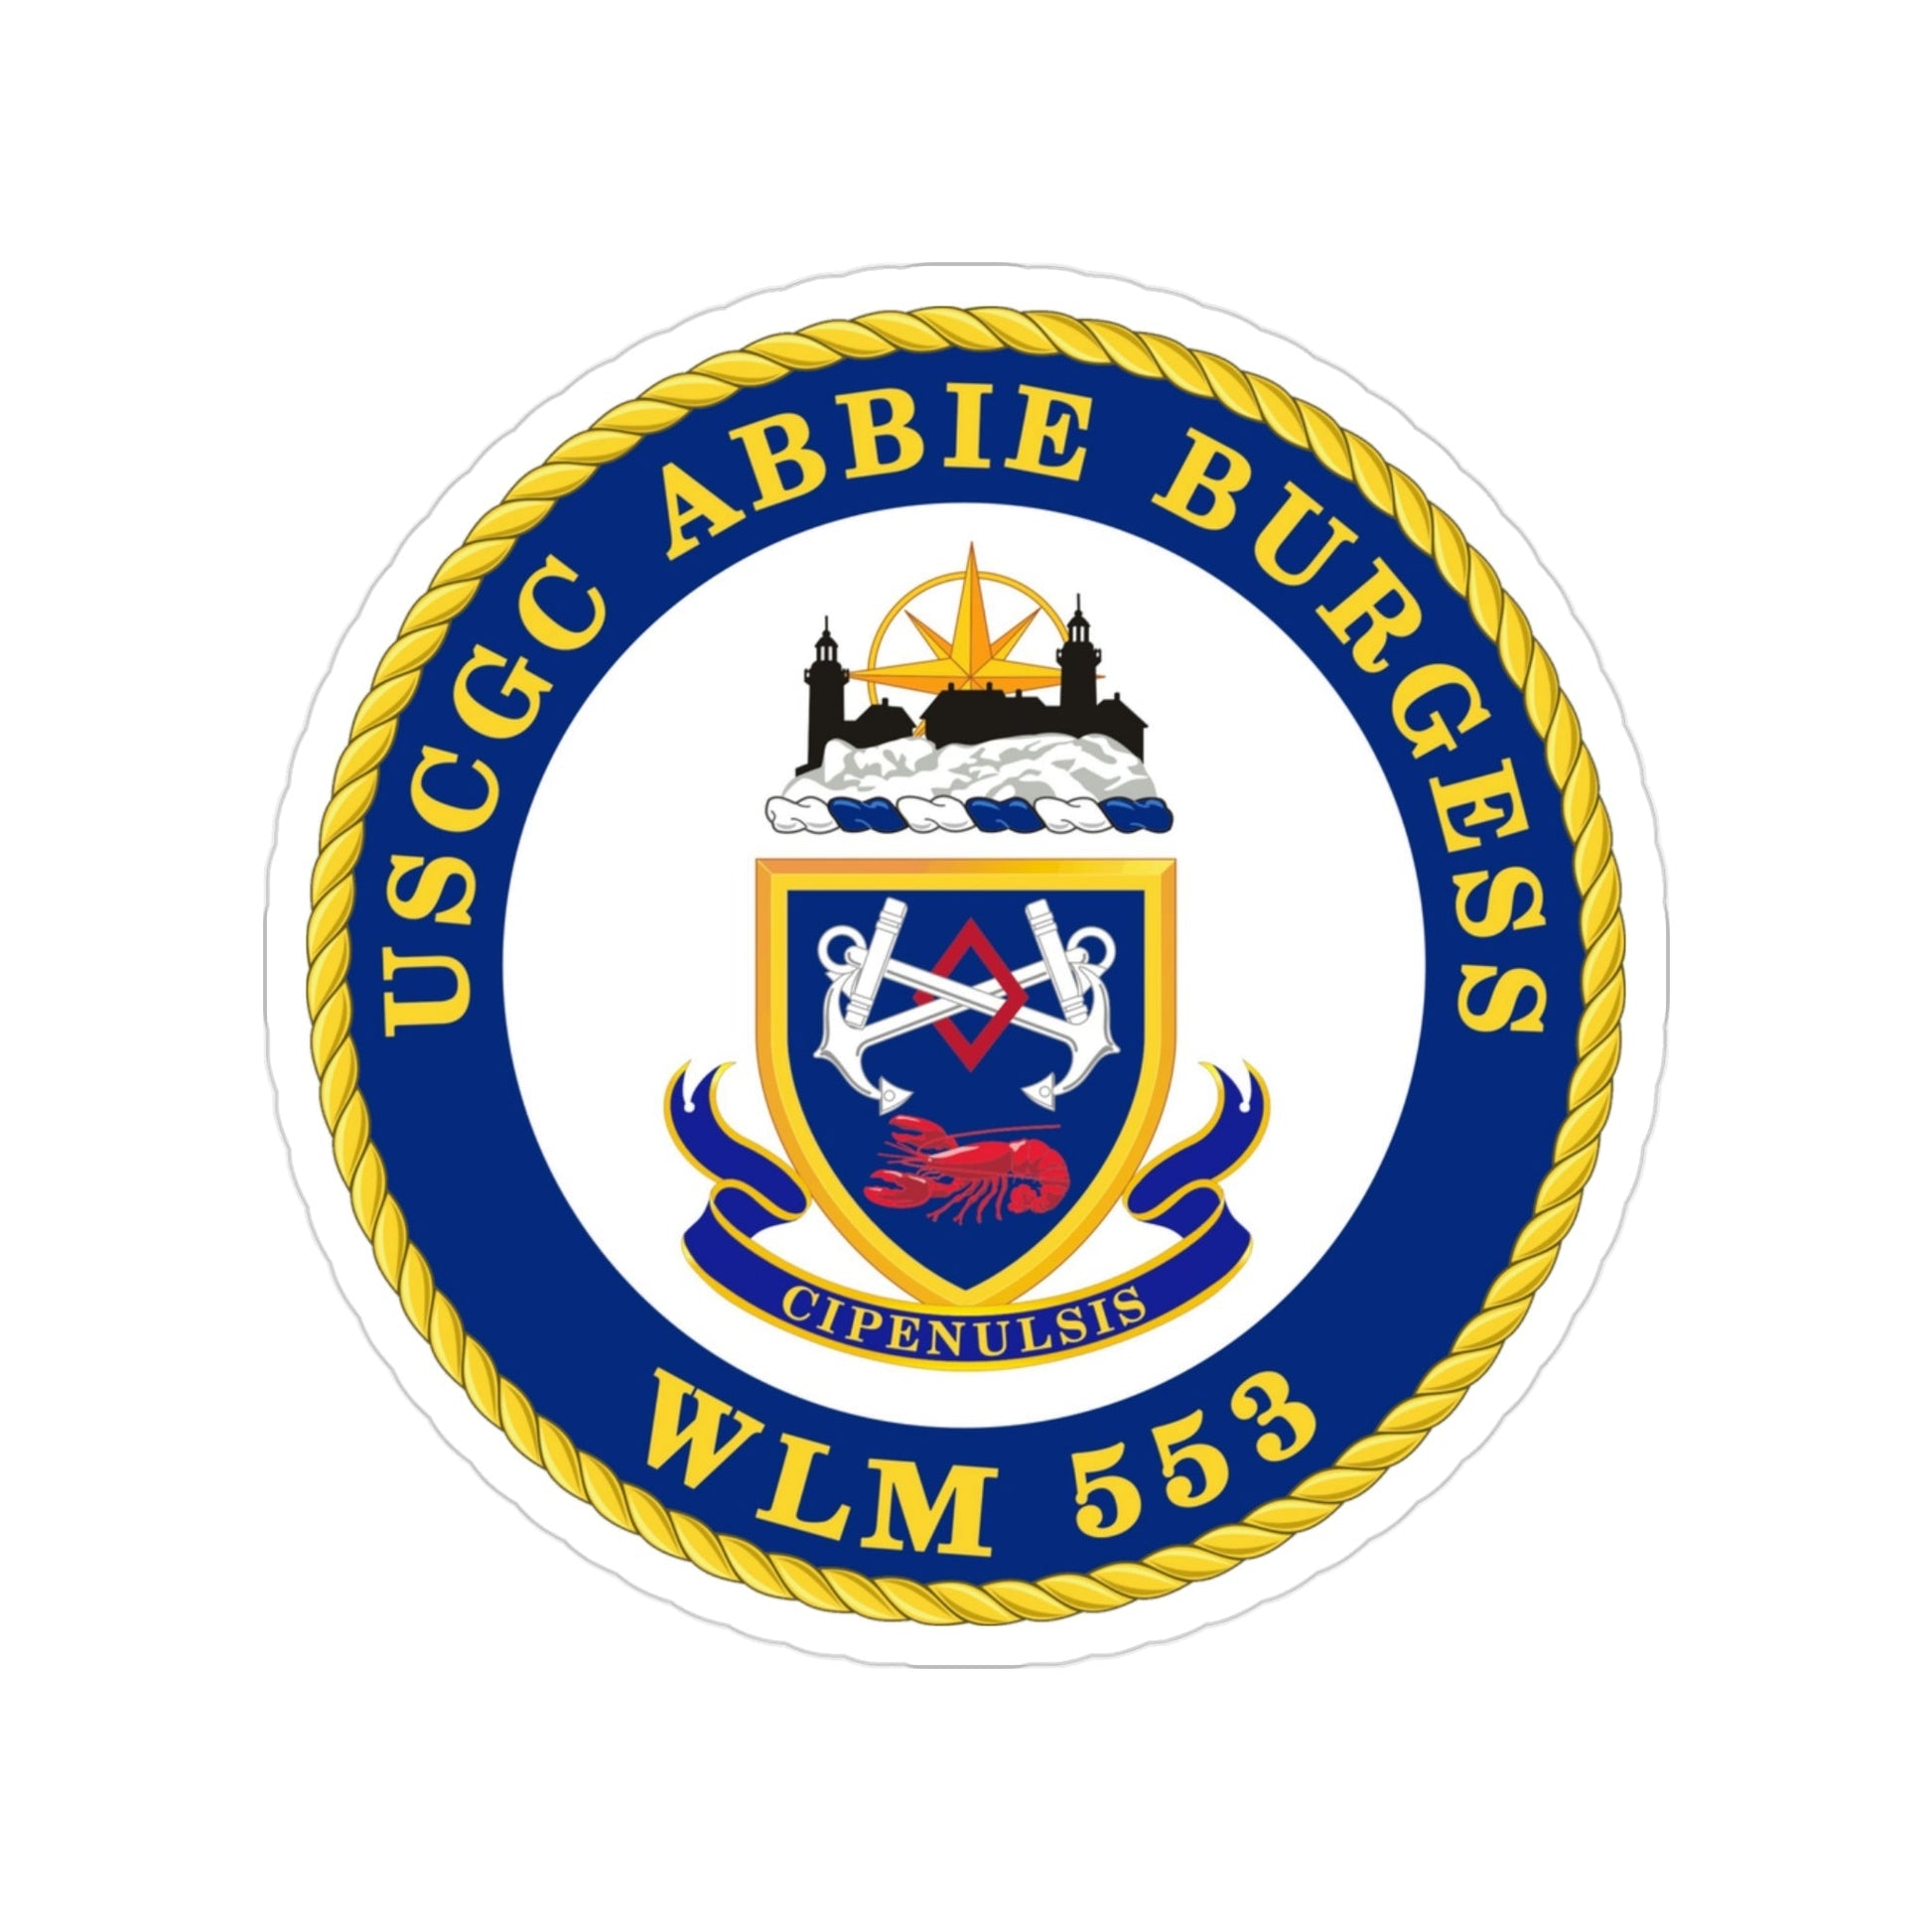 USCGC Abbie Burgess WLM 553 (U.S. Coast Guard) Transparent STICKER Die-Cut Vinyl Decal-3 Inch-The Sticker Space